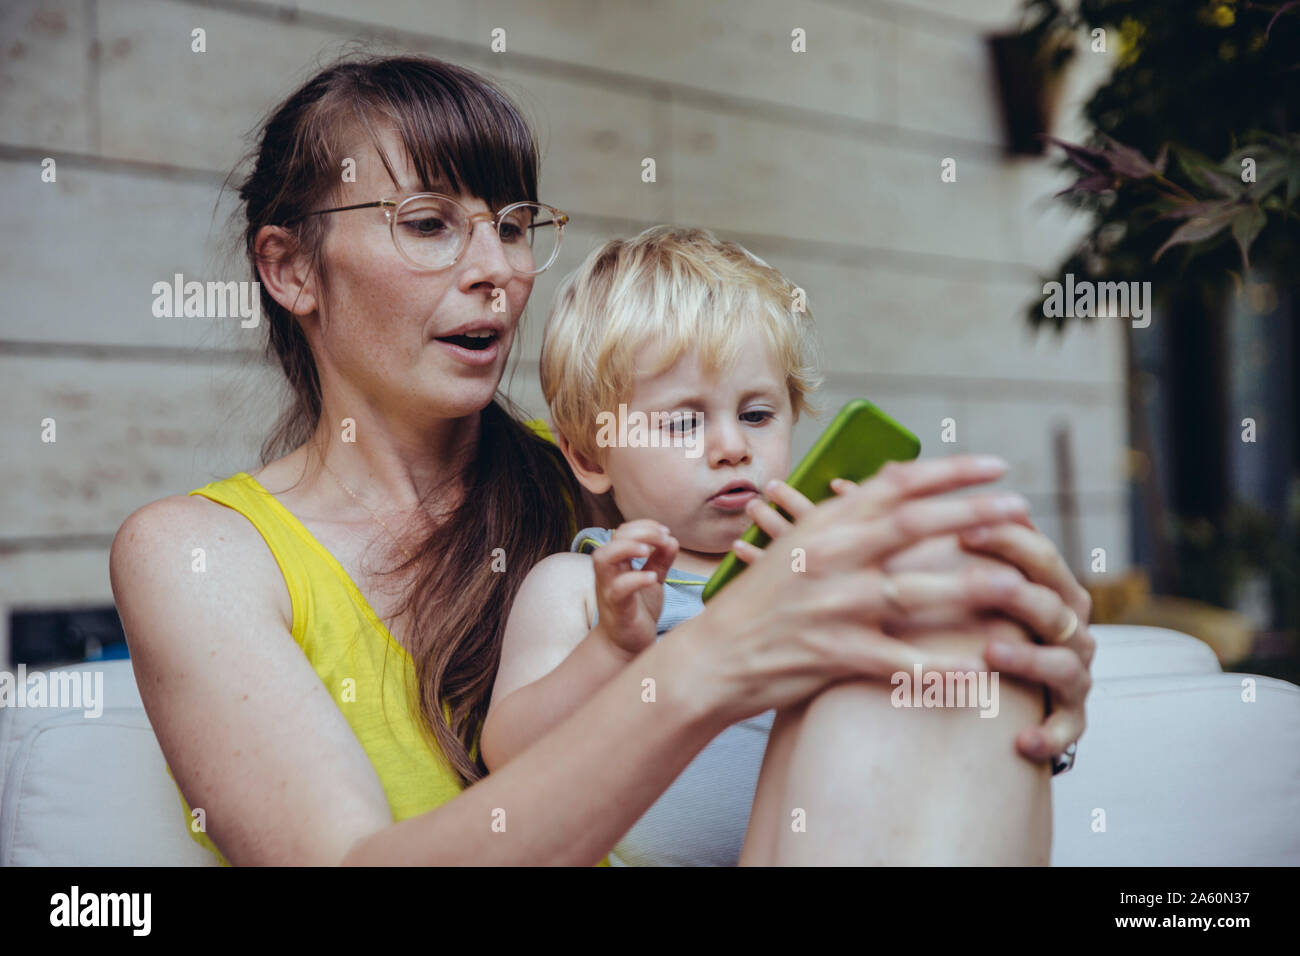 Chico sentados en el regazo de la madre, mirando el smartphone Foto de stock